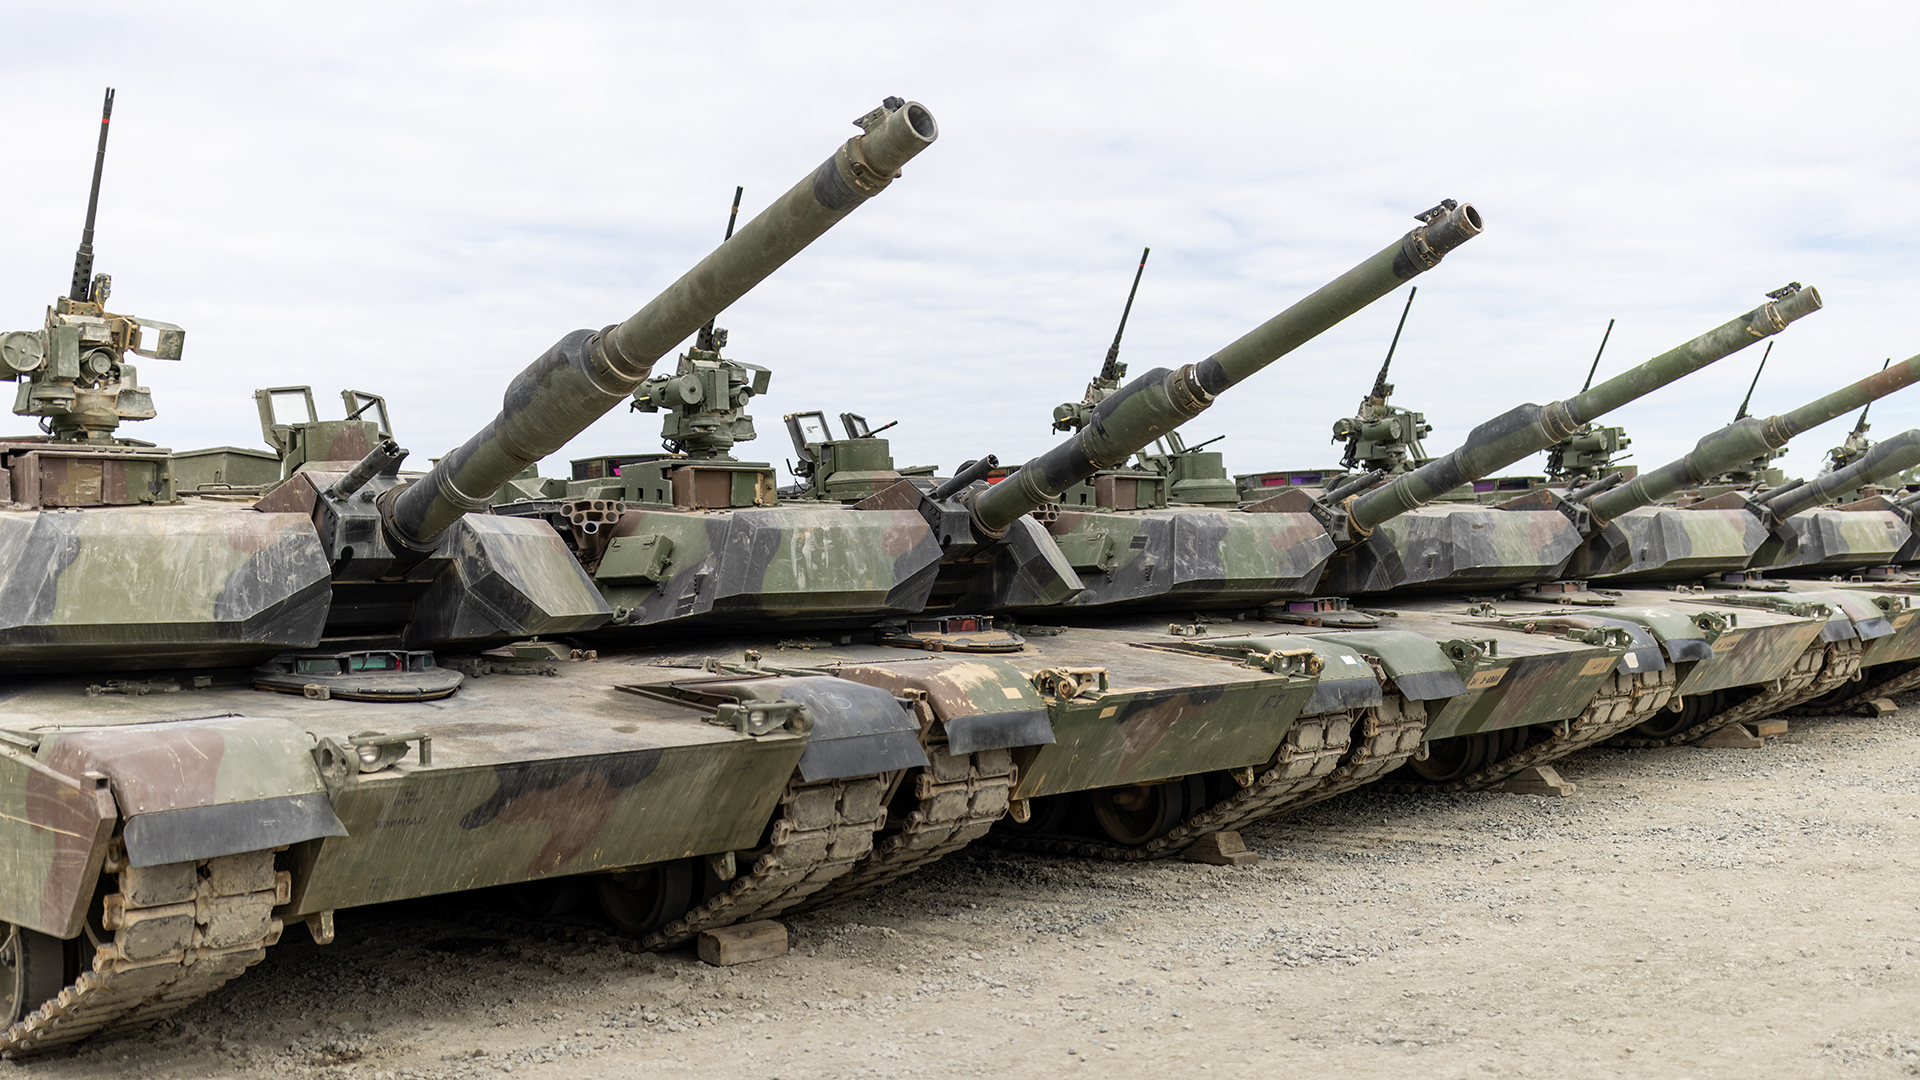  Panzer des Typs M1A2 "Abrams" stehen auf dem Gelände bei den US-Streitkräften in Grafenwöhr. (Aufnahme: Juli 2022) | dpa